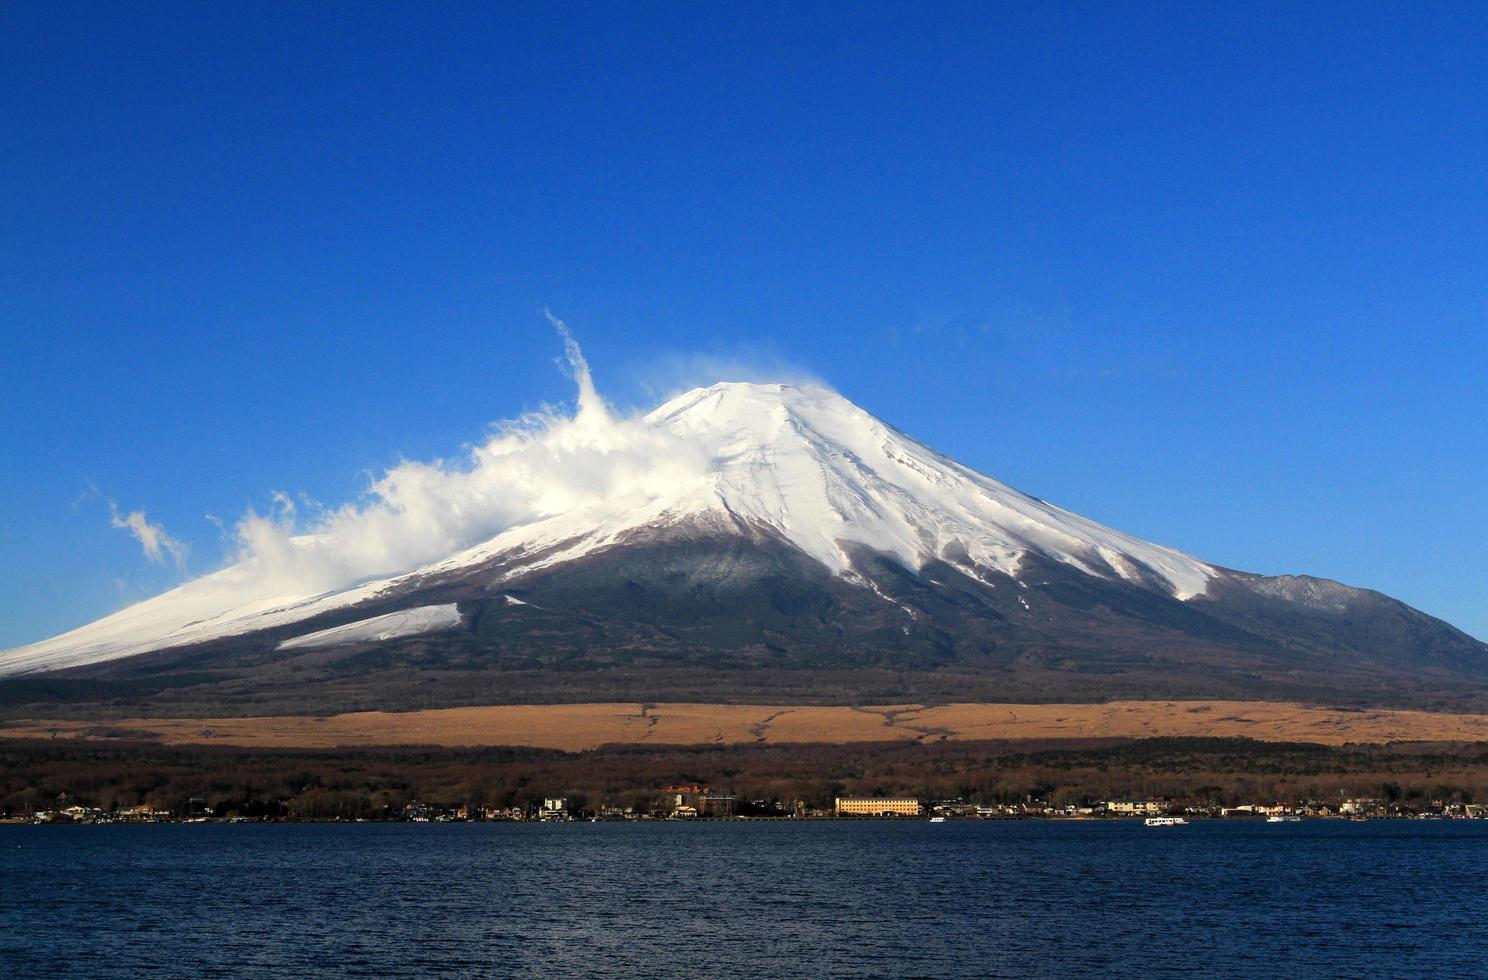 Fuji berg med snö och dimma täckt topp och klarblå himmel bakgrund med ovan kopia utrymme. detta berg eller plats känd i Japan och Asien för människor som reser för att besöka och ta bilder. naturlig foto